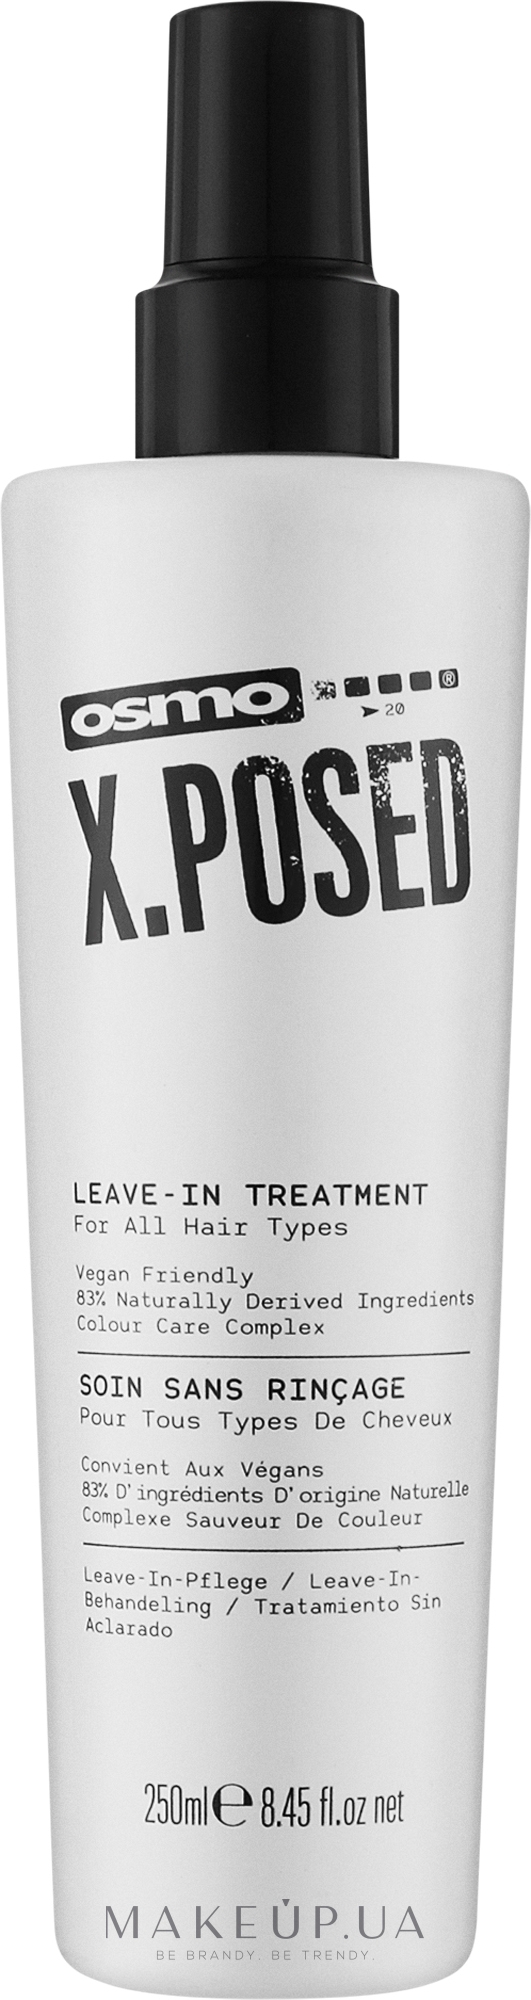 Безсульфатный несмываемый уход для волос - Osmo X.Posed Leave-In Treatment — фото 250ml